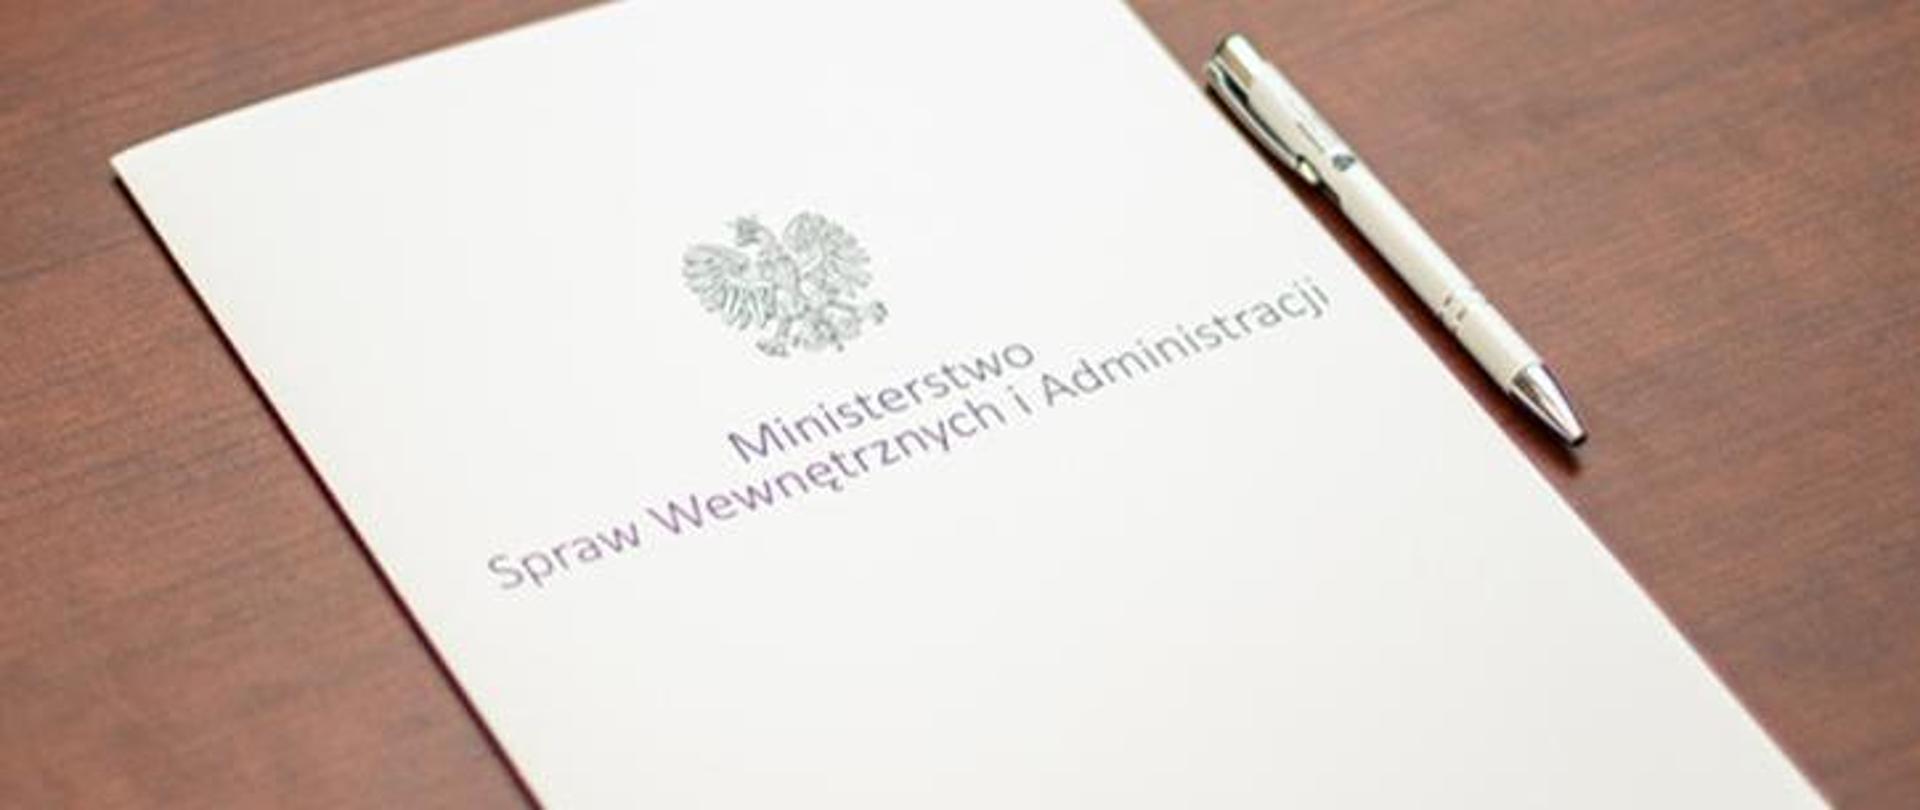 Dokument, na którym widnieje orzeł polski i widnieje napis Ministerstwo Spraw Wewnętrznych i Administracji